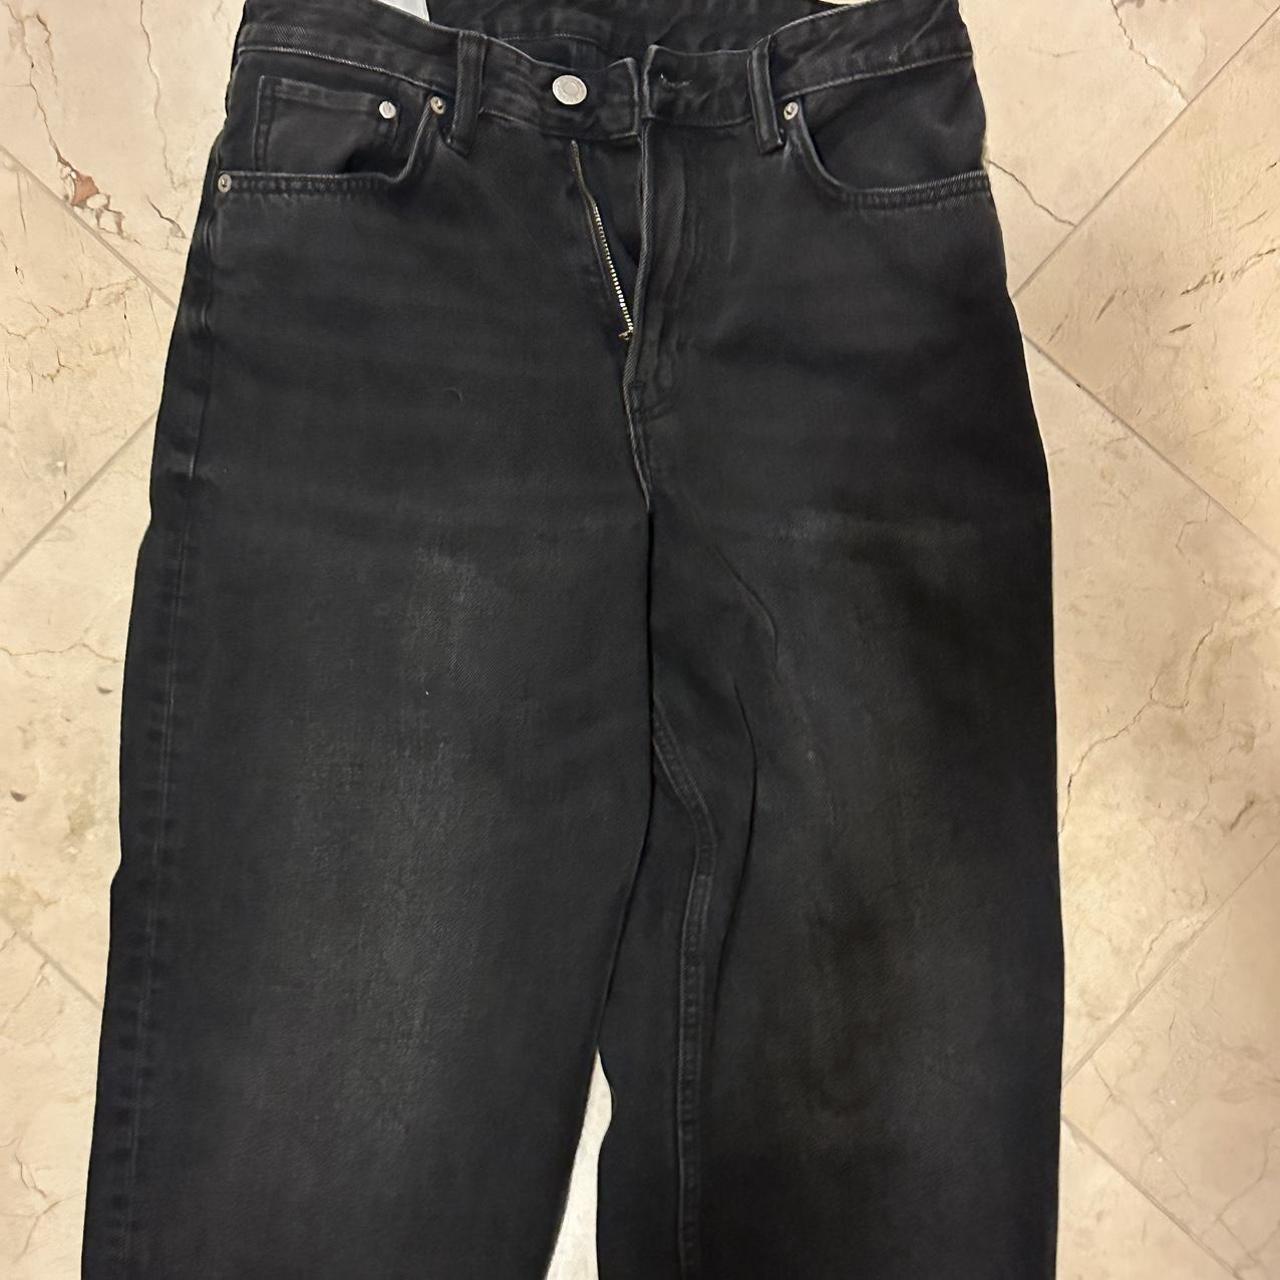 H&M Loose black jeans 30/30 - Depop